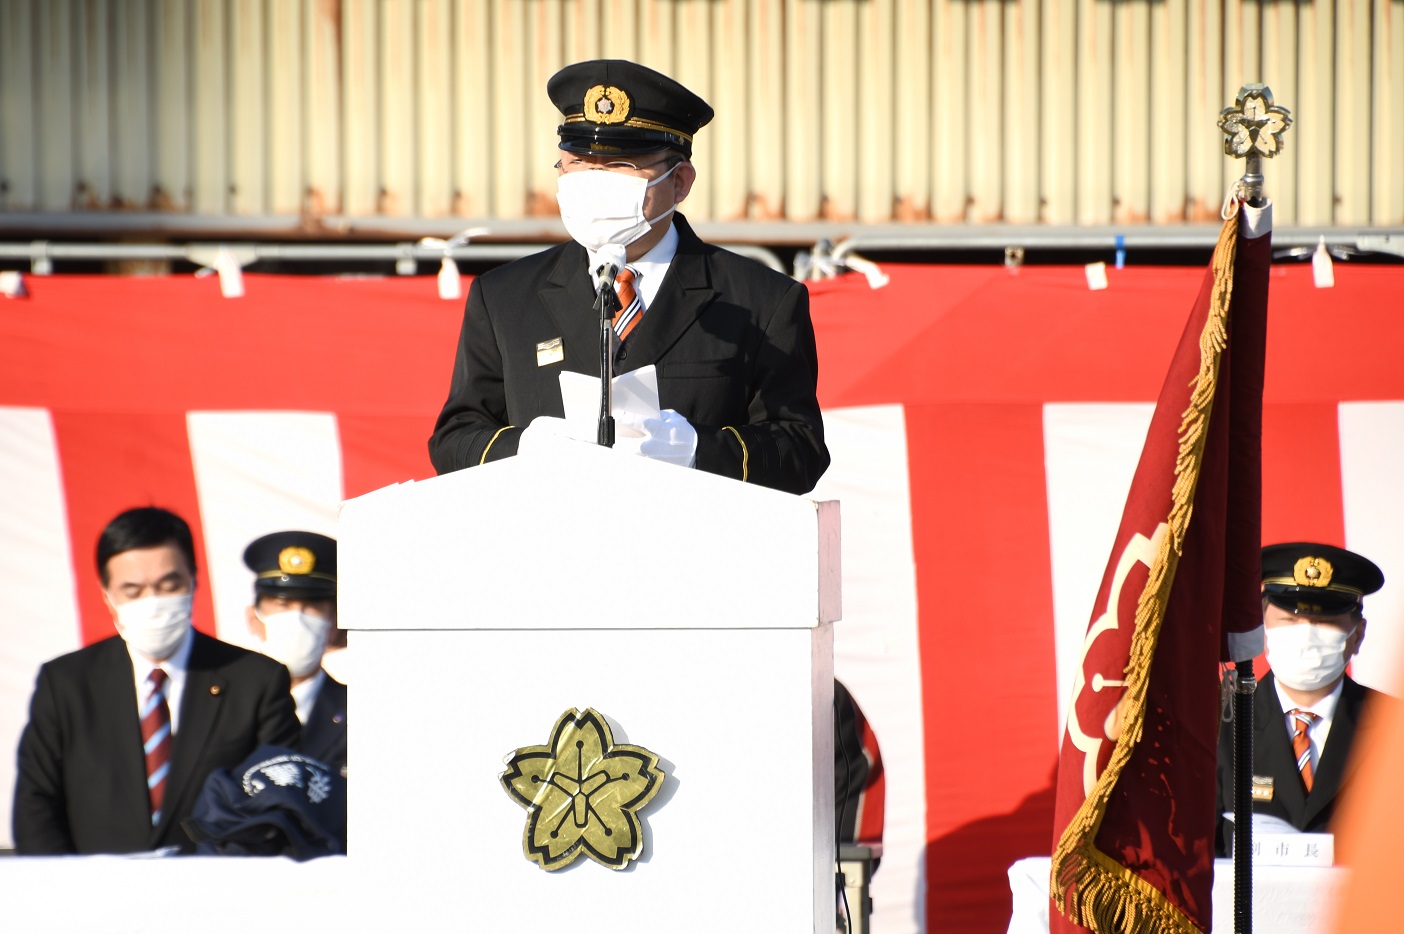 消防出初式で式辞を読み上げる西平市長の写真